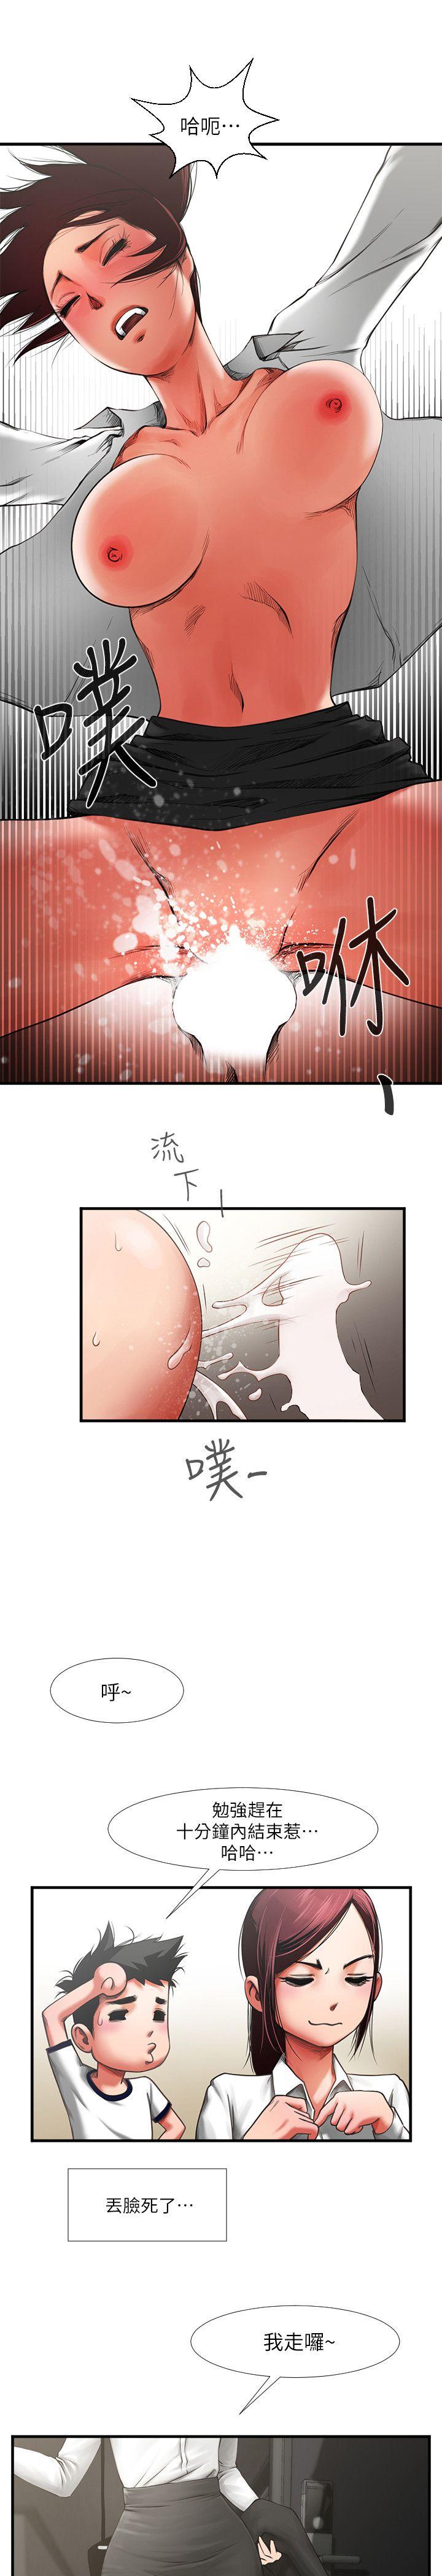 韩国污漫画 共享情人 第1话-陌生的女子 29